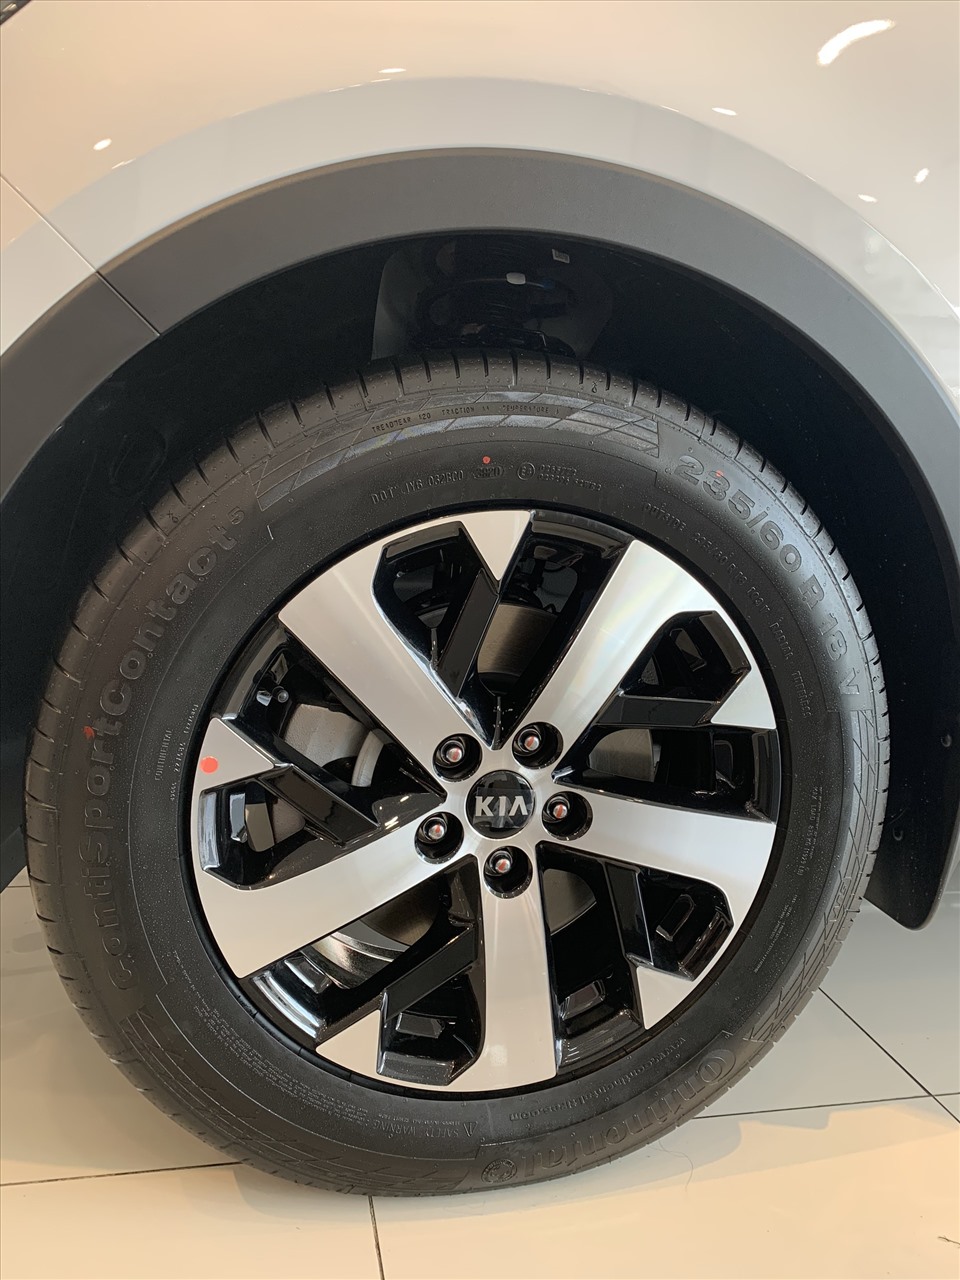 Kia Sorento 2021 sẽ sử dụng bộ mâm 5 chấu đơn 2 màu với kích thước 19 inch đi kèm bộ lốp 235/55R19 của Michelin. Vòm bánh xe sơn đen, nẹp ốp hông là những trang bị của mẫu xe này.